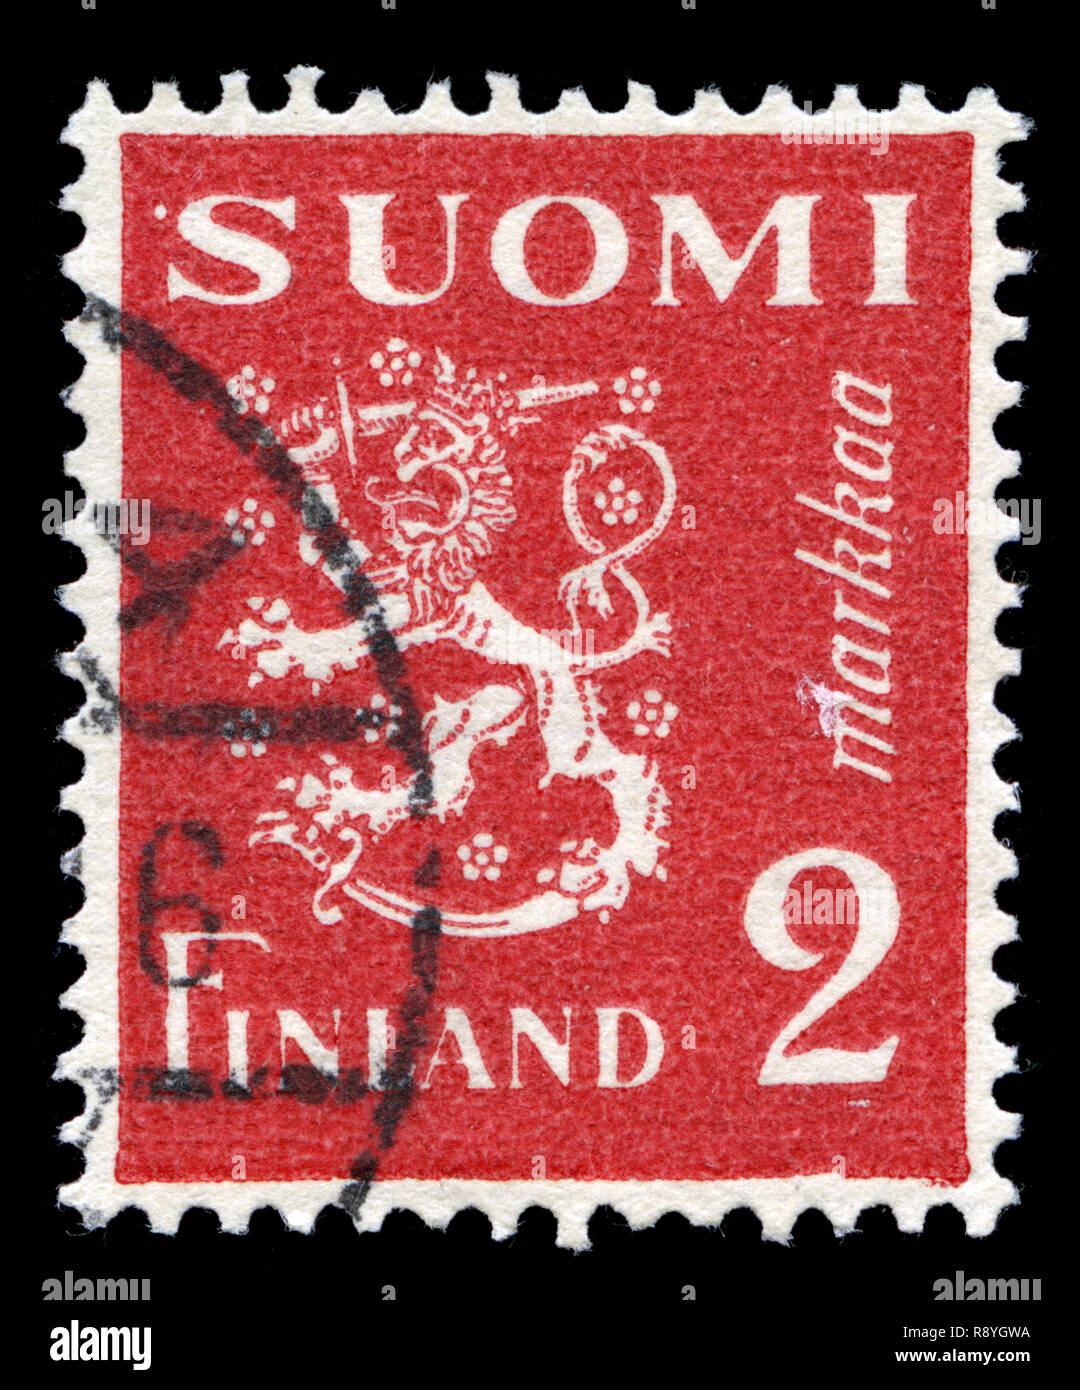 Timbre-poste de la Finlande dans le modèle 1930 Lion série émise en 1936 Banque D'Images